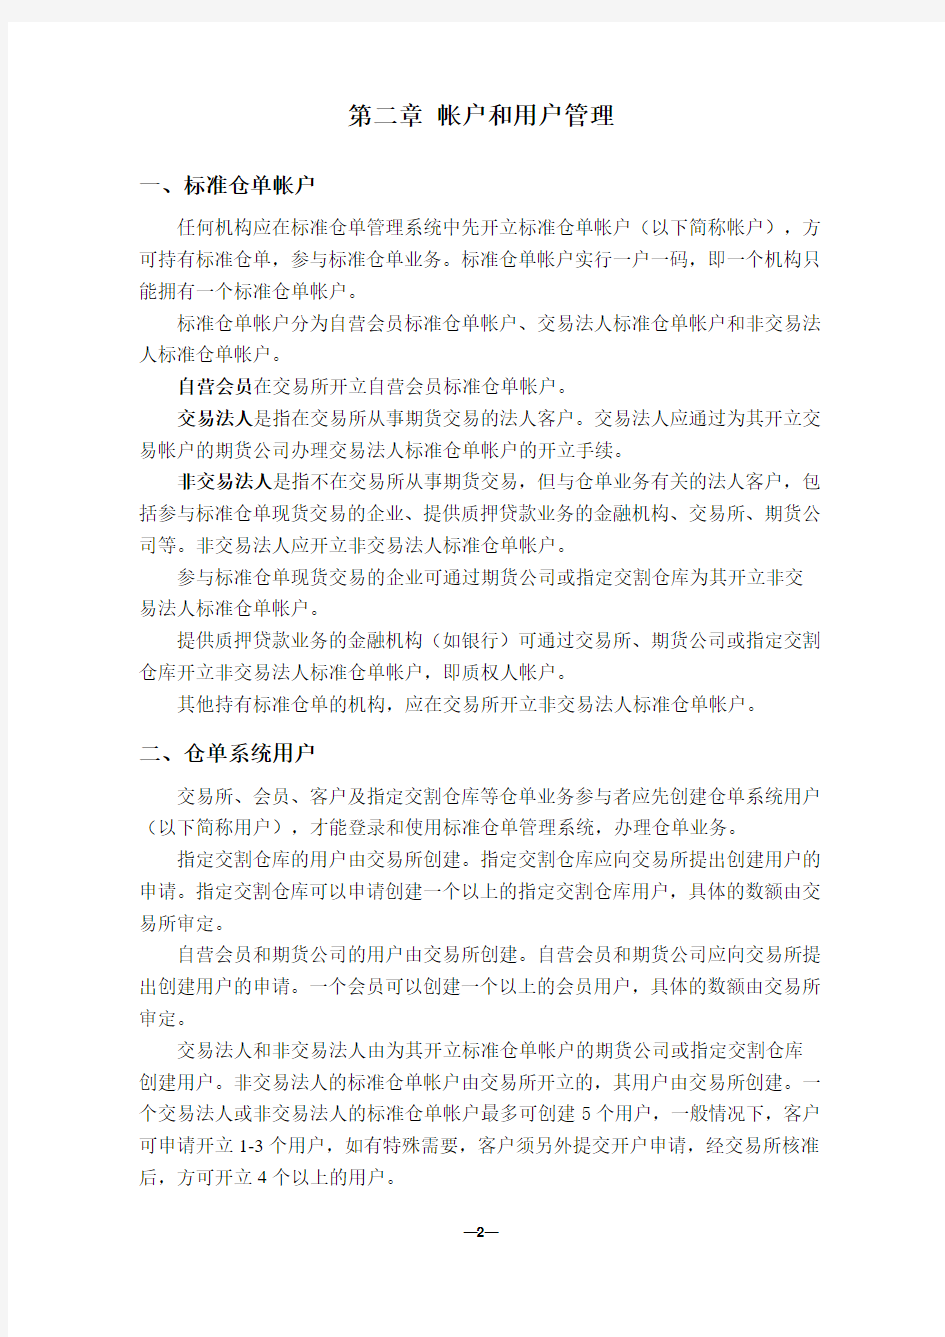 上海期货交易所标准仓单业务操作指南